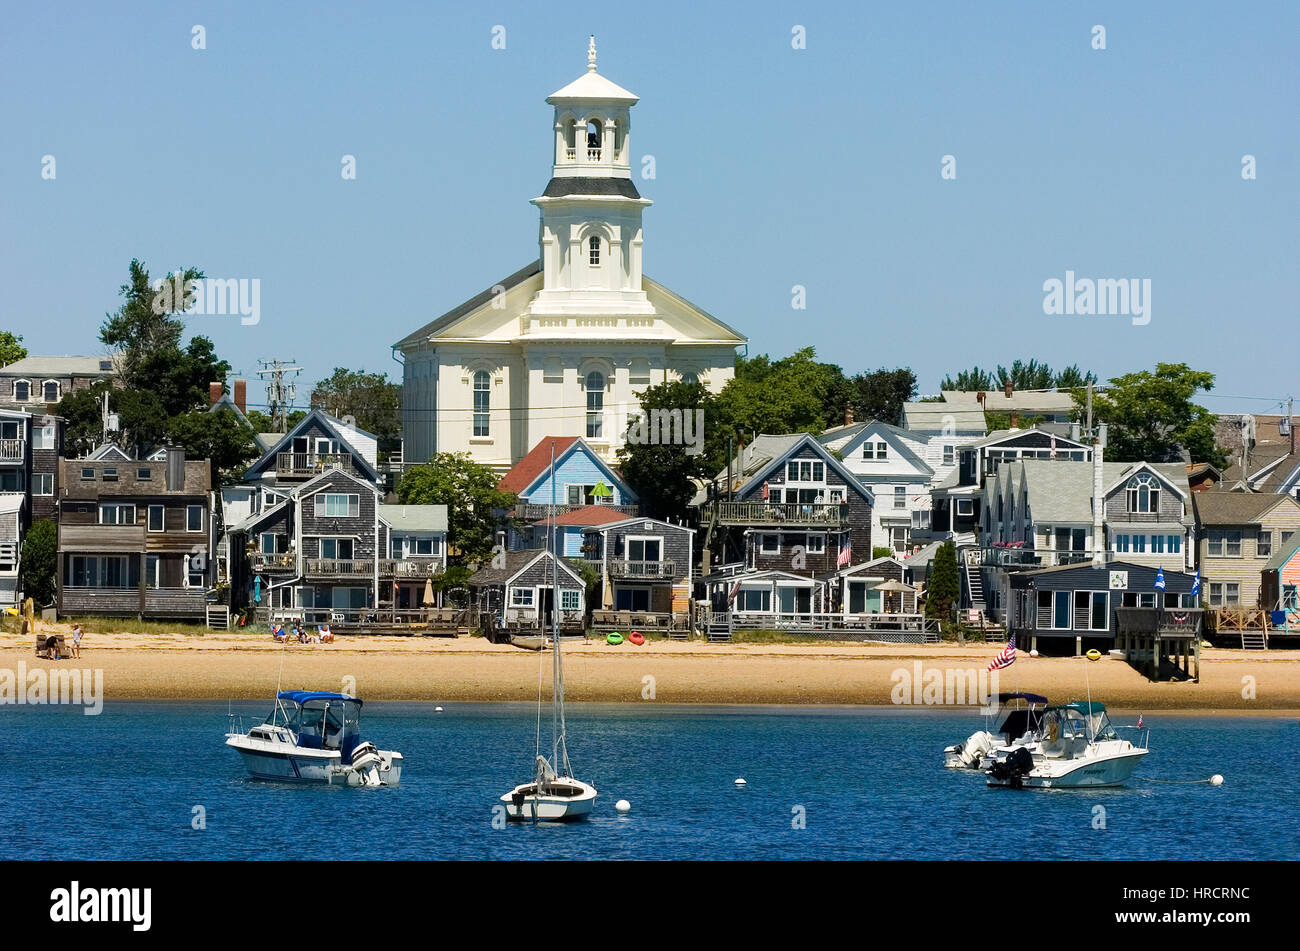 Die Stadt Provincetown, Massachusetts auf Cape Cod.  Die Uferpromenade und Stadt Skyline - die Stadtbibliothek ist mit der Turm gesehen. Stockfoto